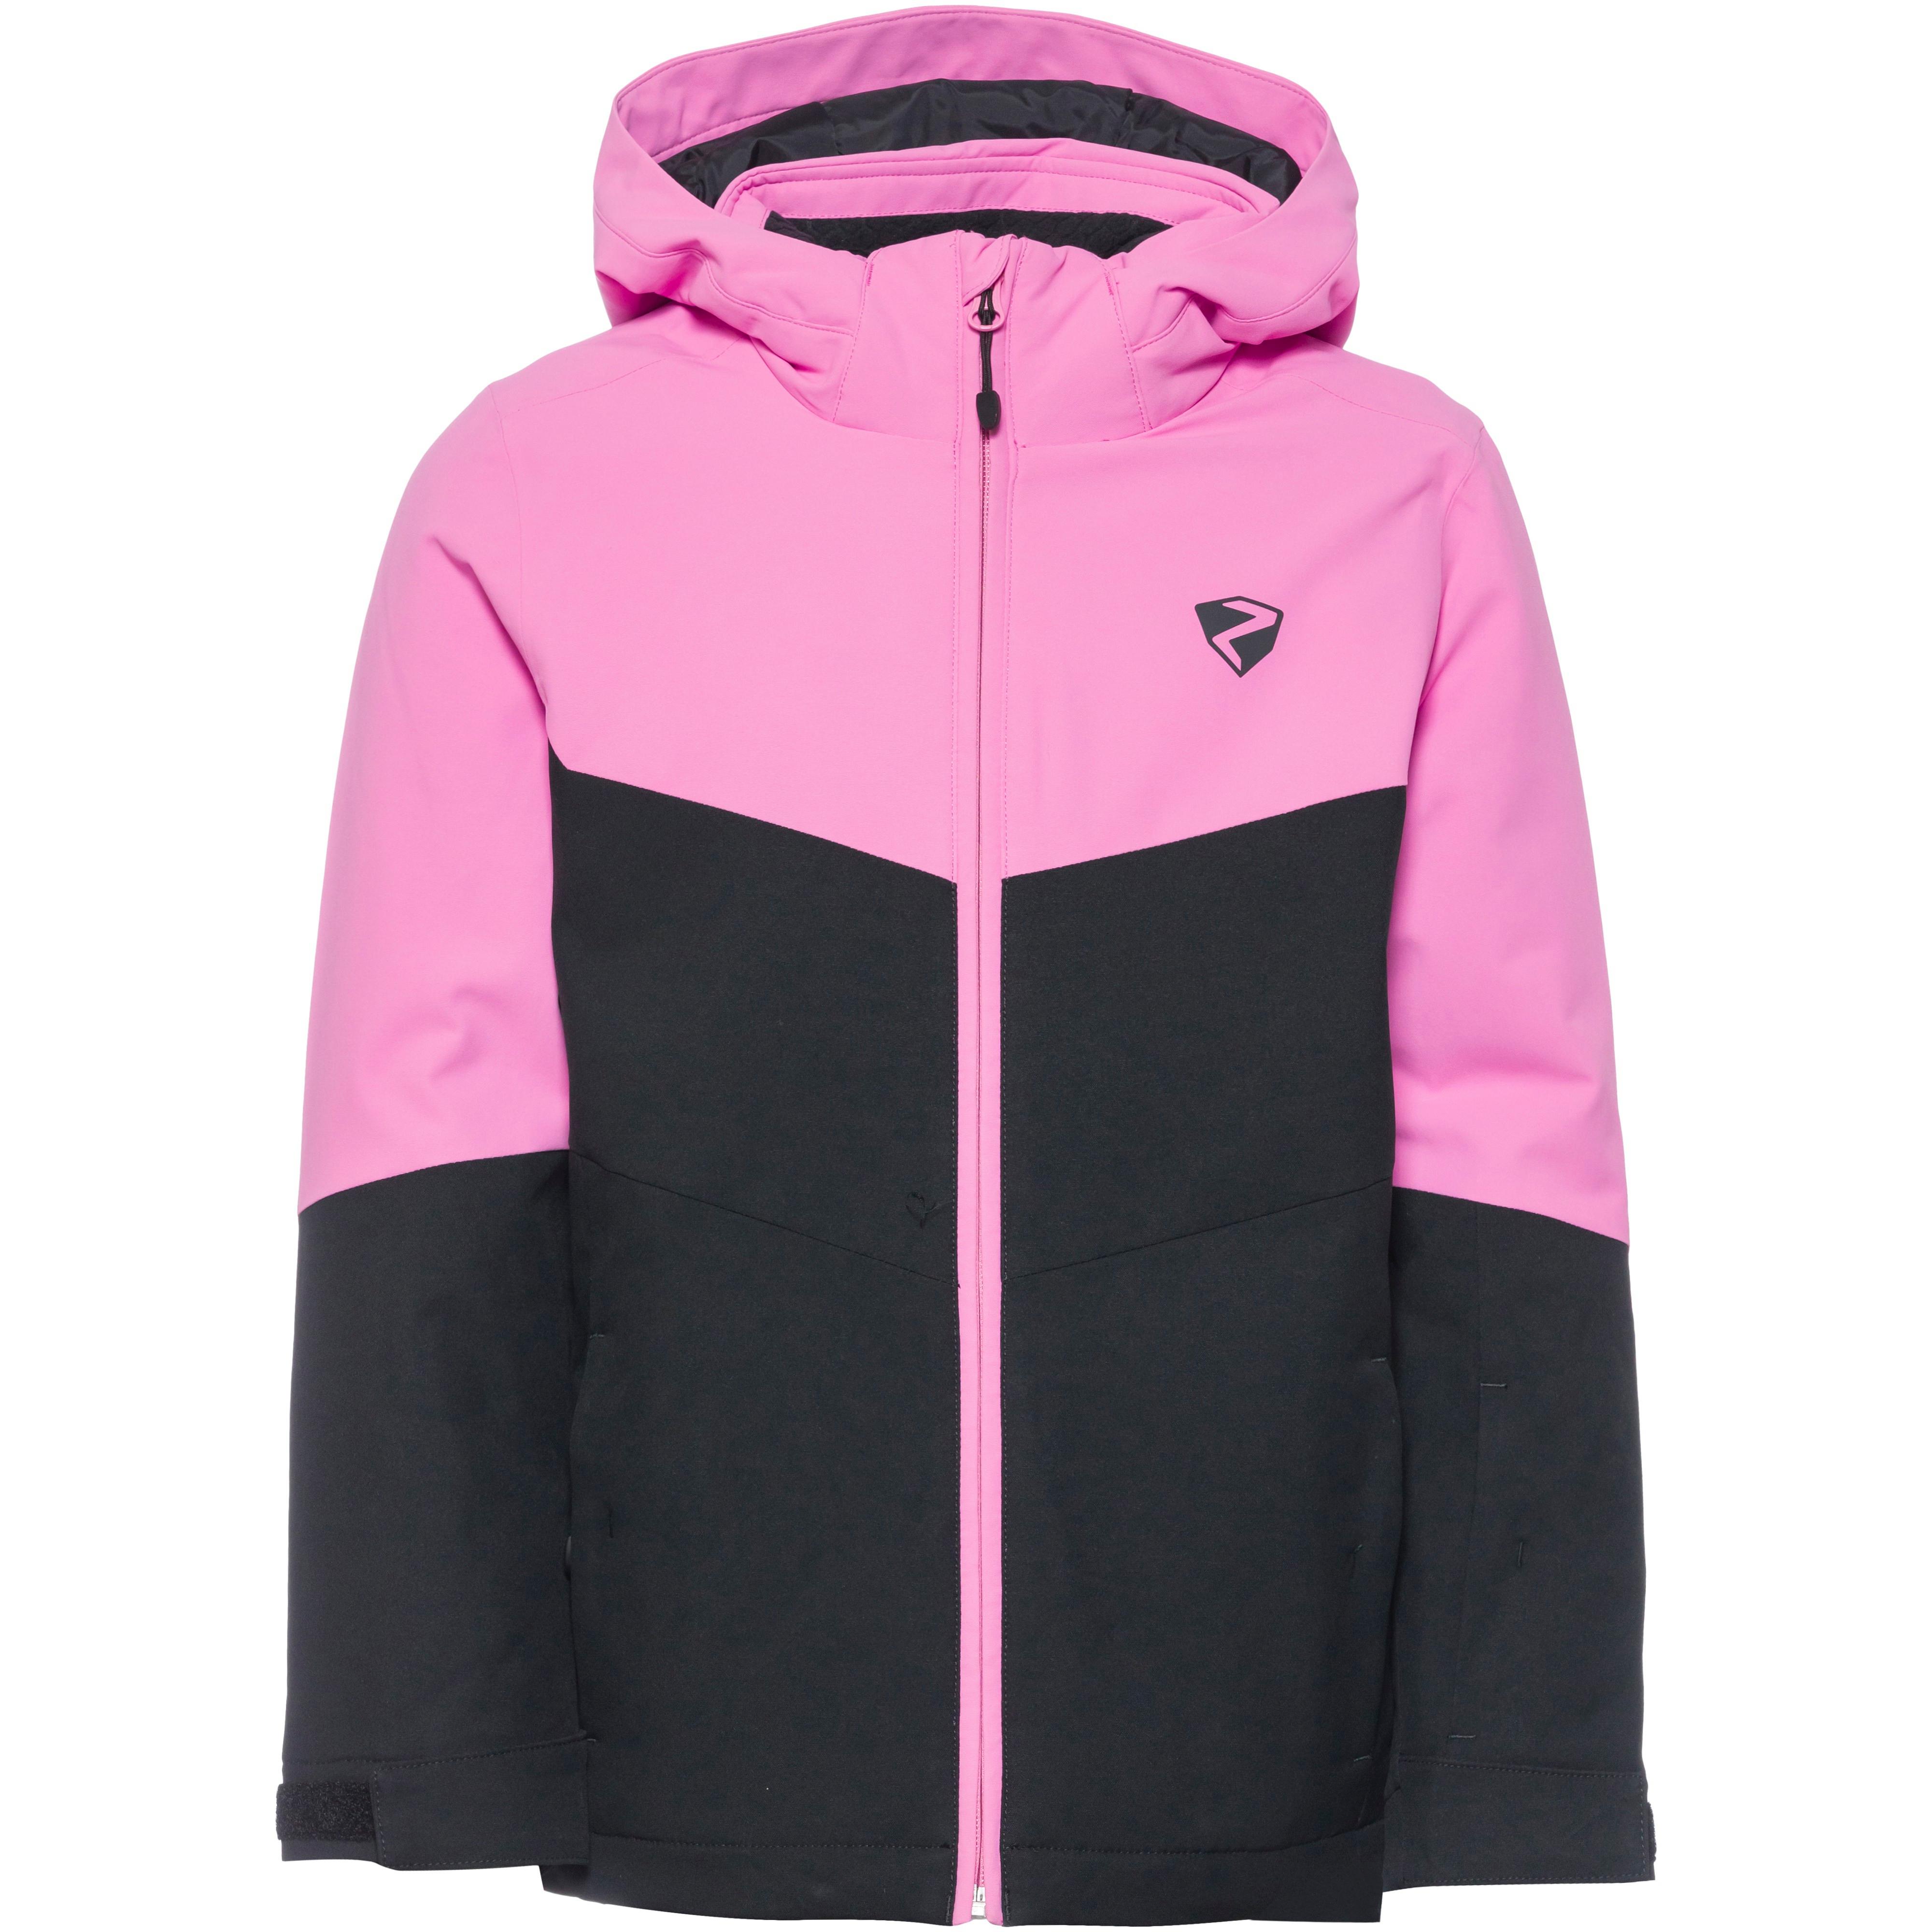 Kleidung von Ziener in rosa im Online Shop von SportScheck kaufen